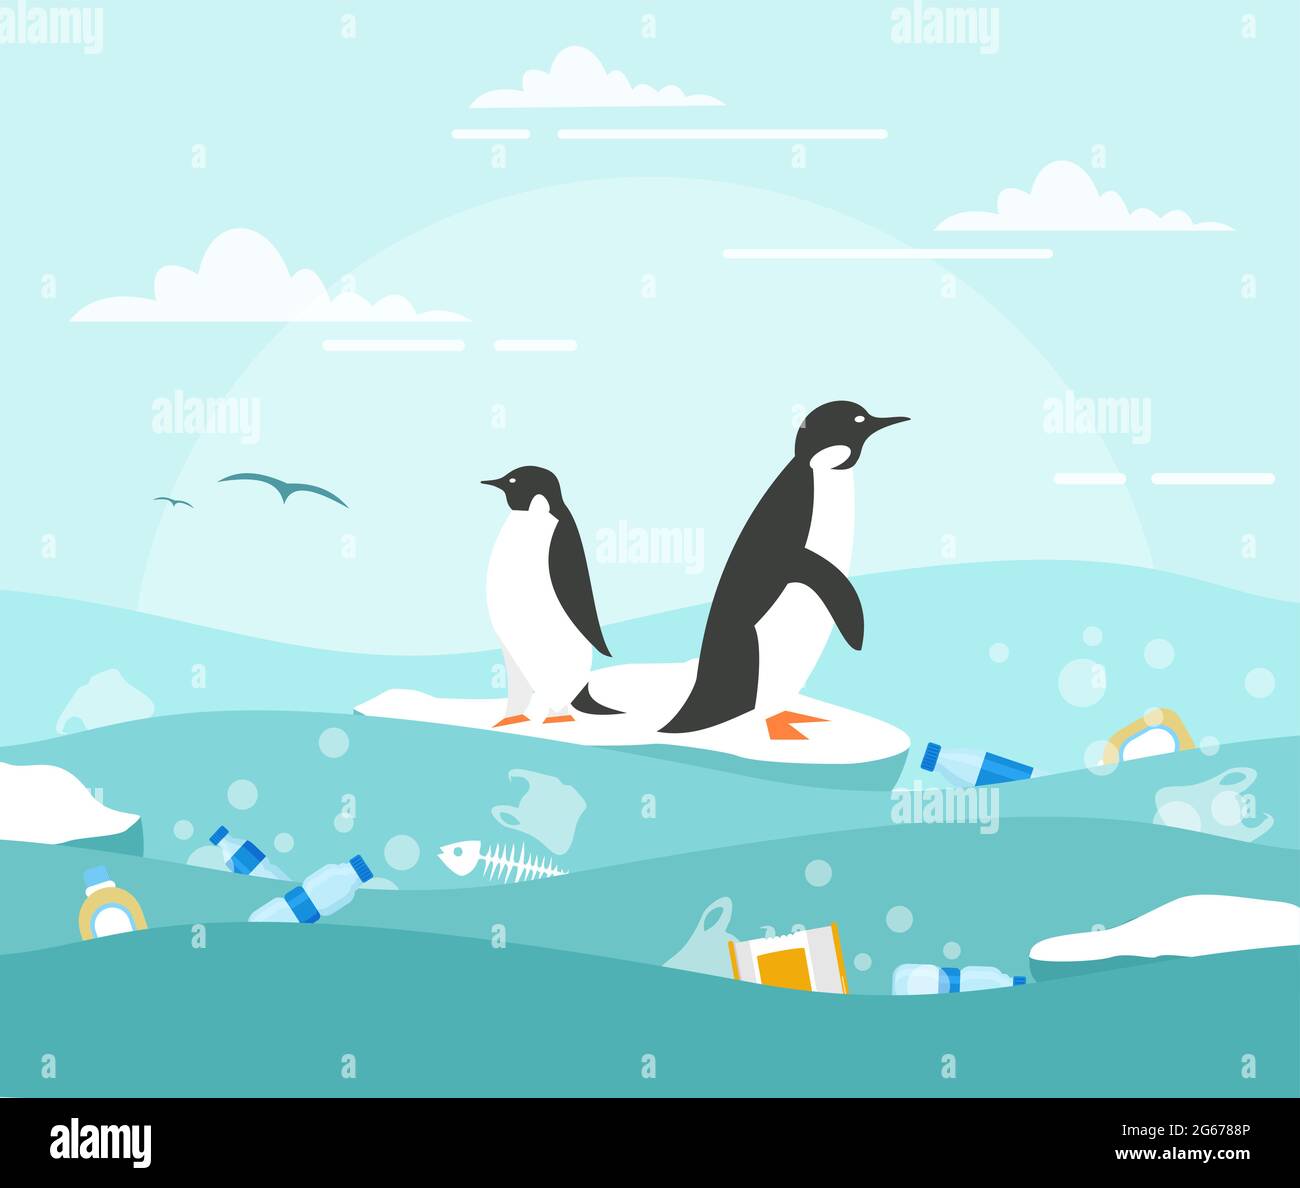 Vektor-Illustration Konzept der Meeresverschmutzung mit Plastikmüll. Pinguine auf dem kleinen Stück Eis und viel Abfall im Wasser Stock Vektor